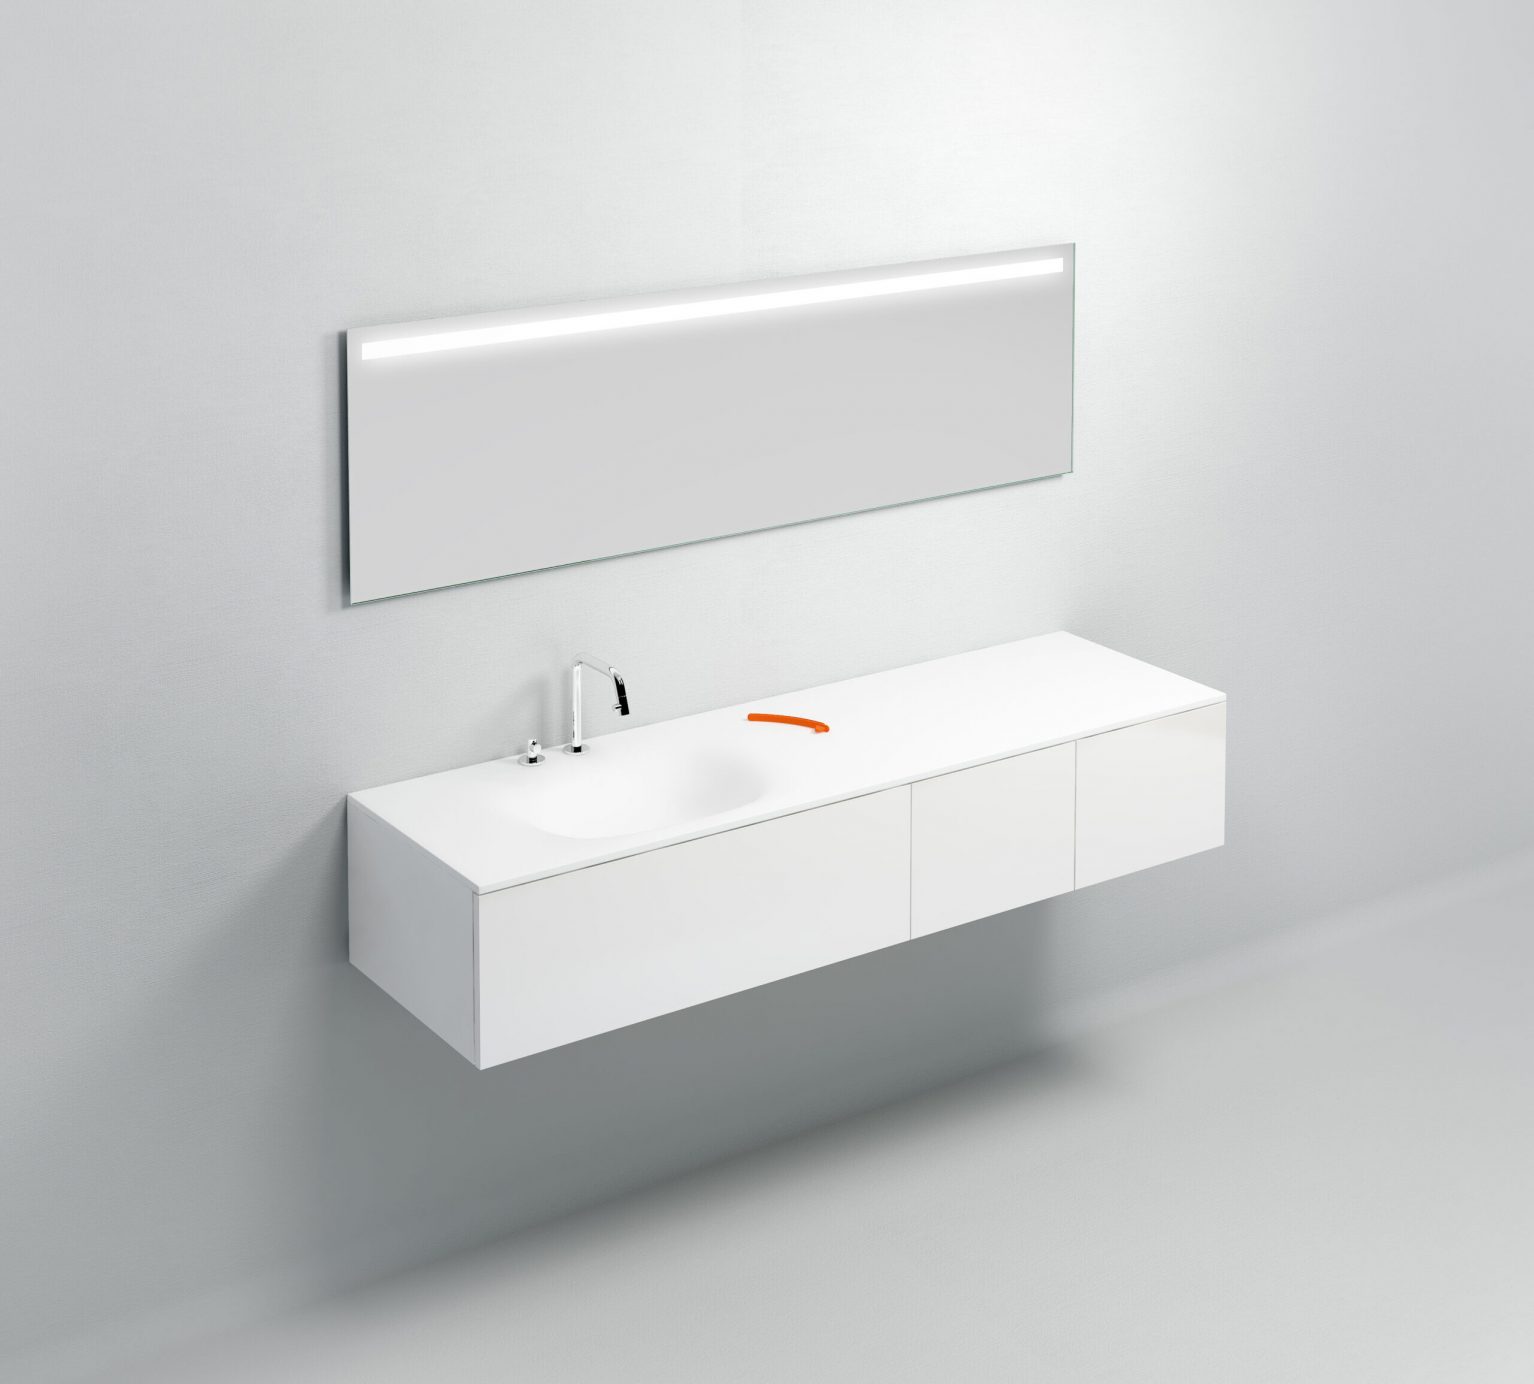 wastafel-wit-toilet-badkamer-luxe-sanitair-Hammock-clou-CL021307320L-aluite-170cm-wasbak-waskom-blad-kraangat-afvoer-waterstop-shadow-Sp